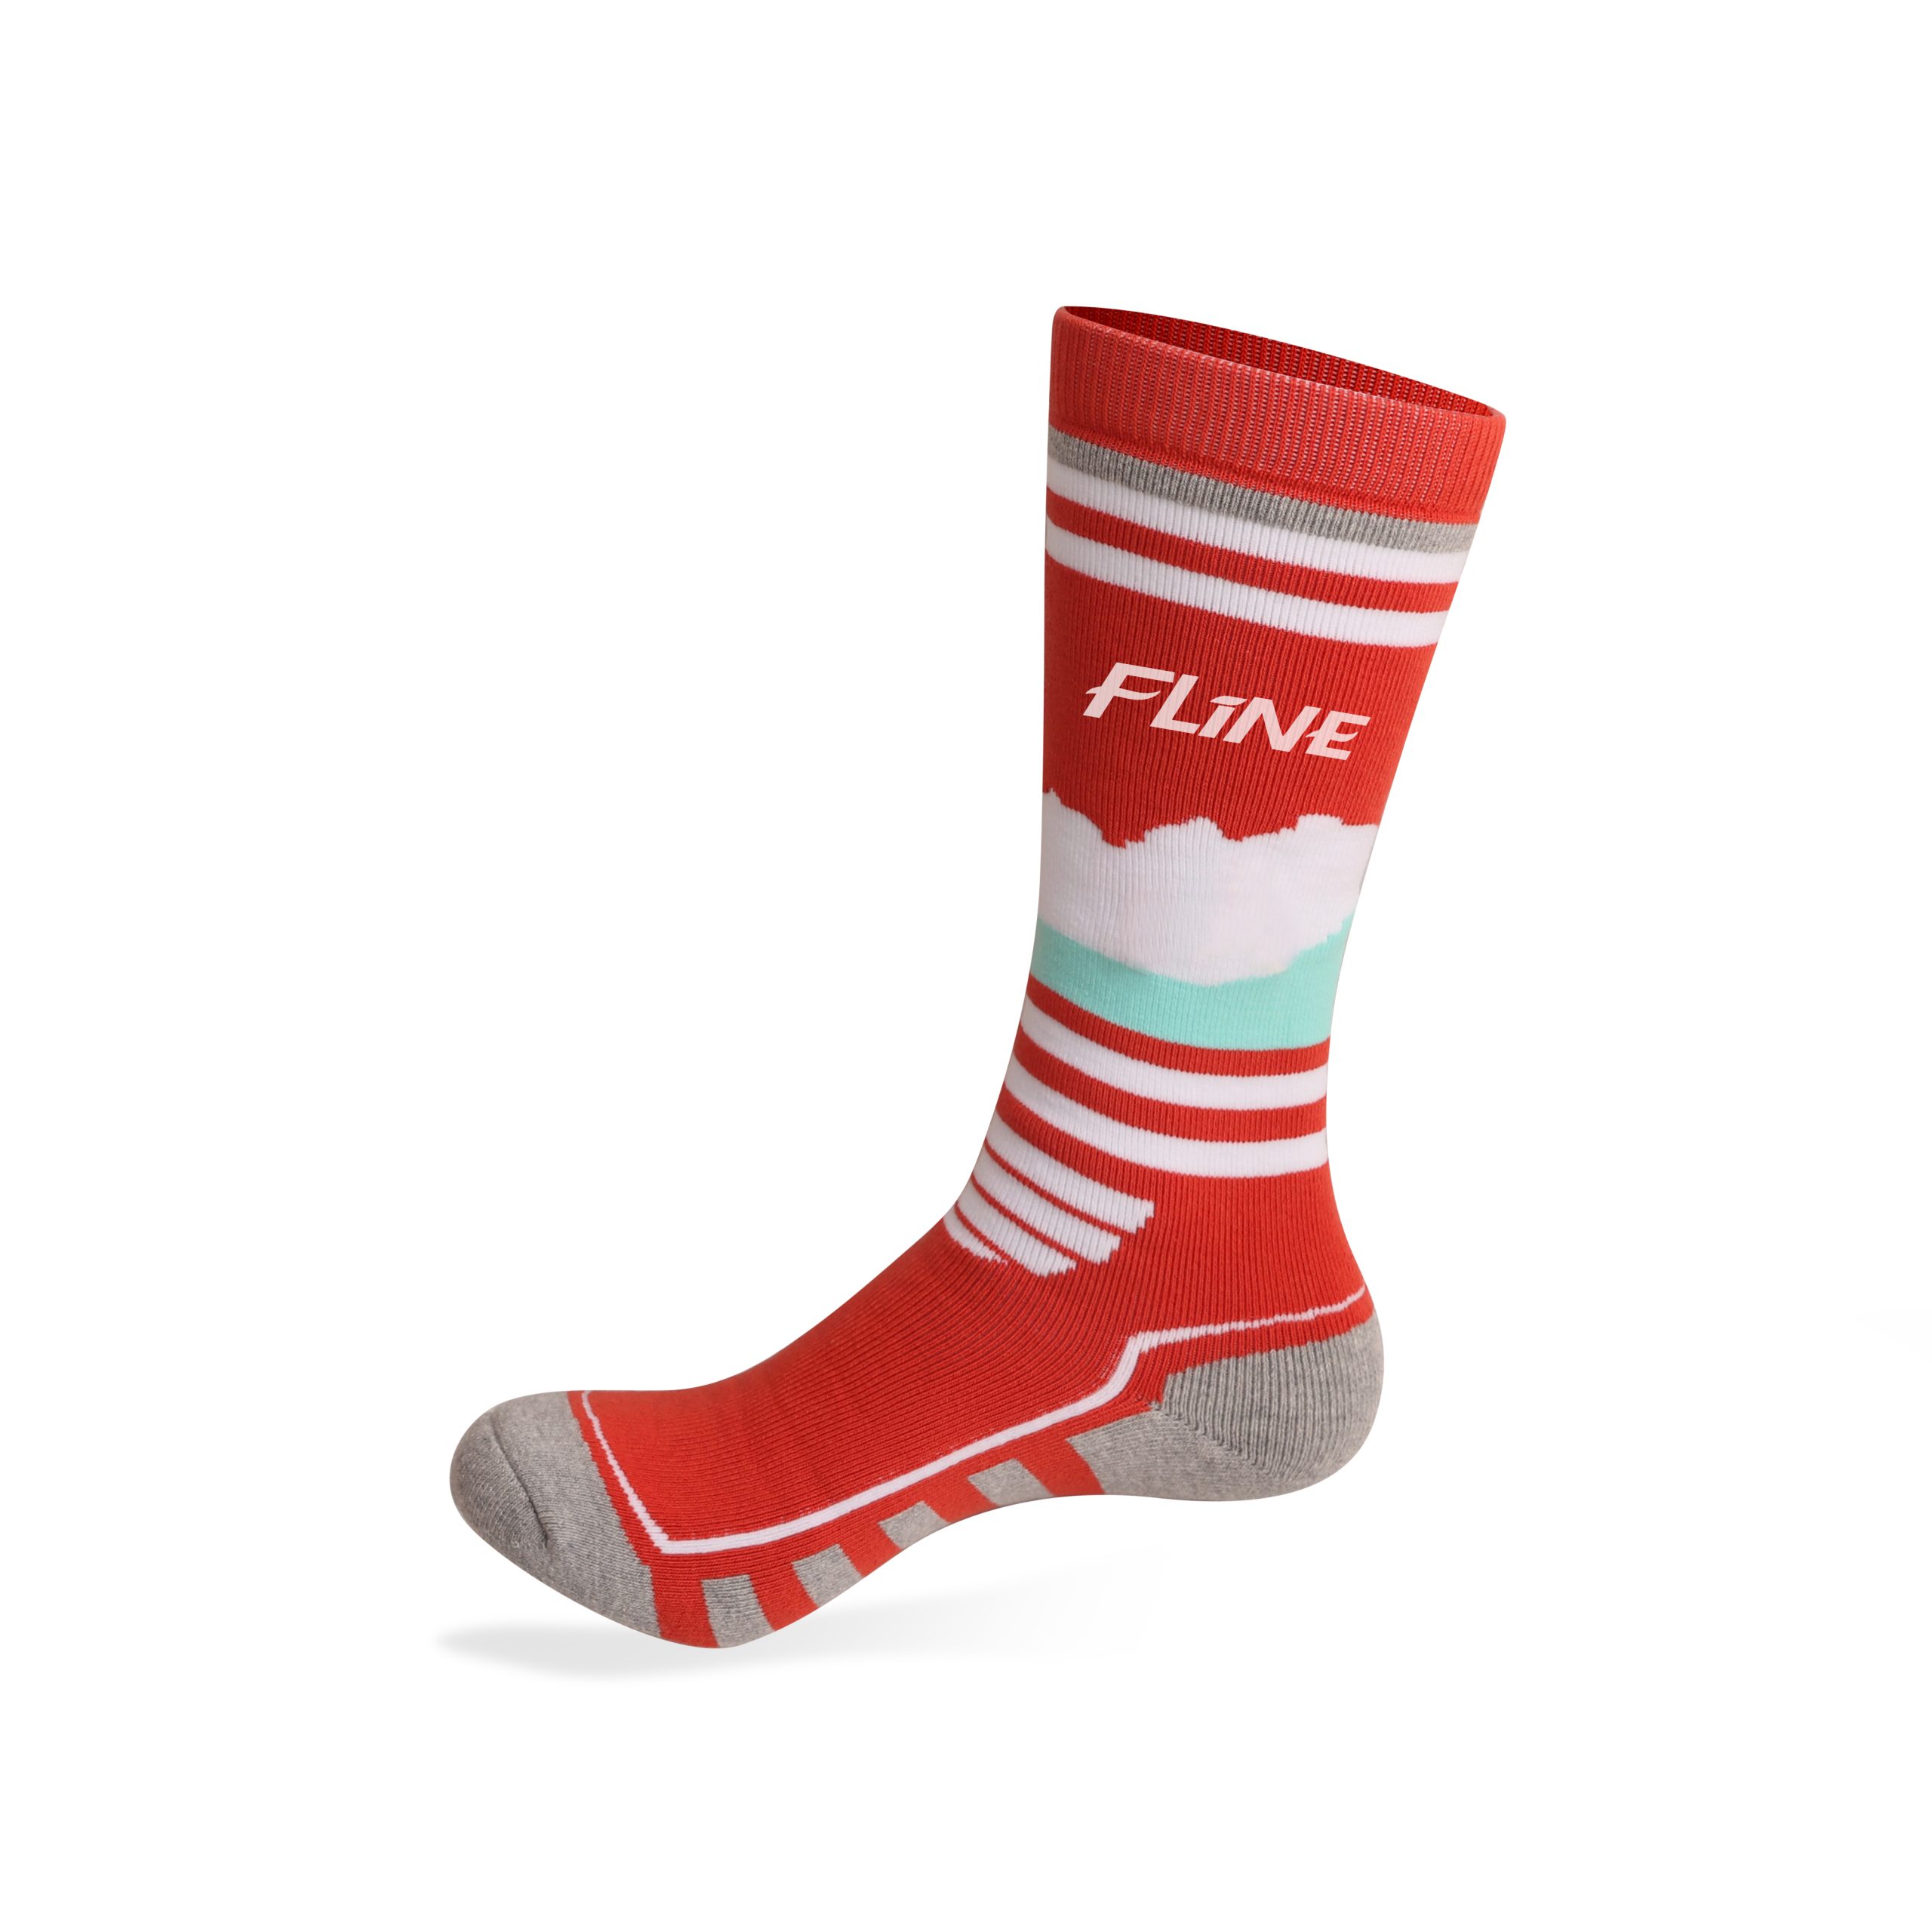 Custom Branded Socks